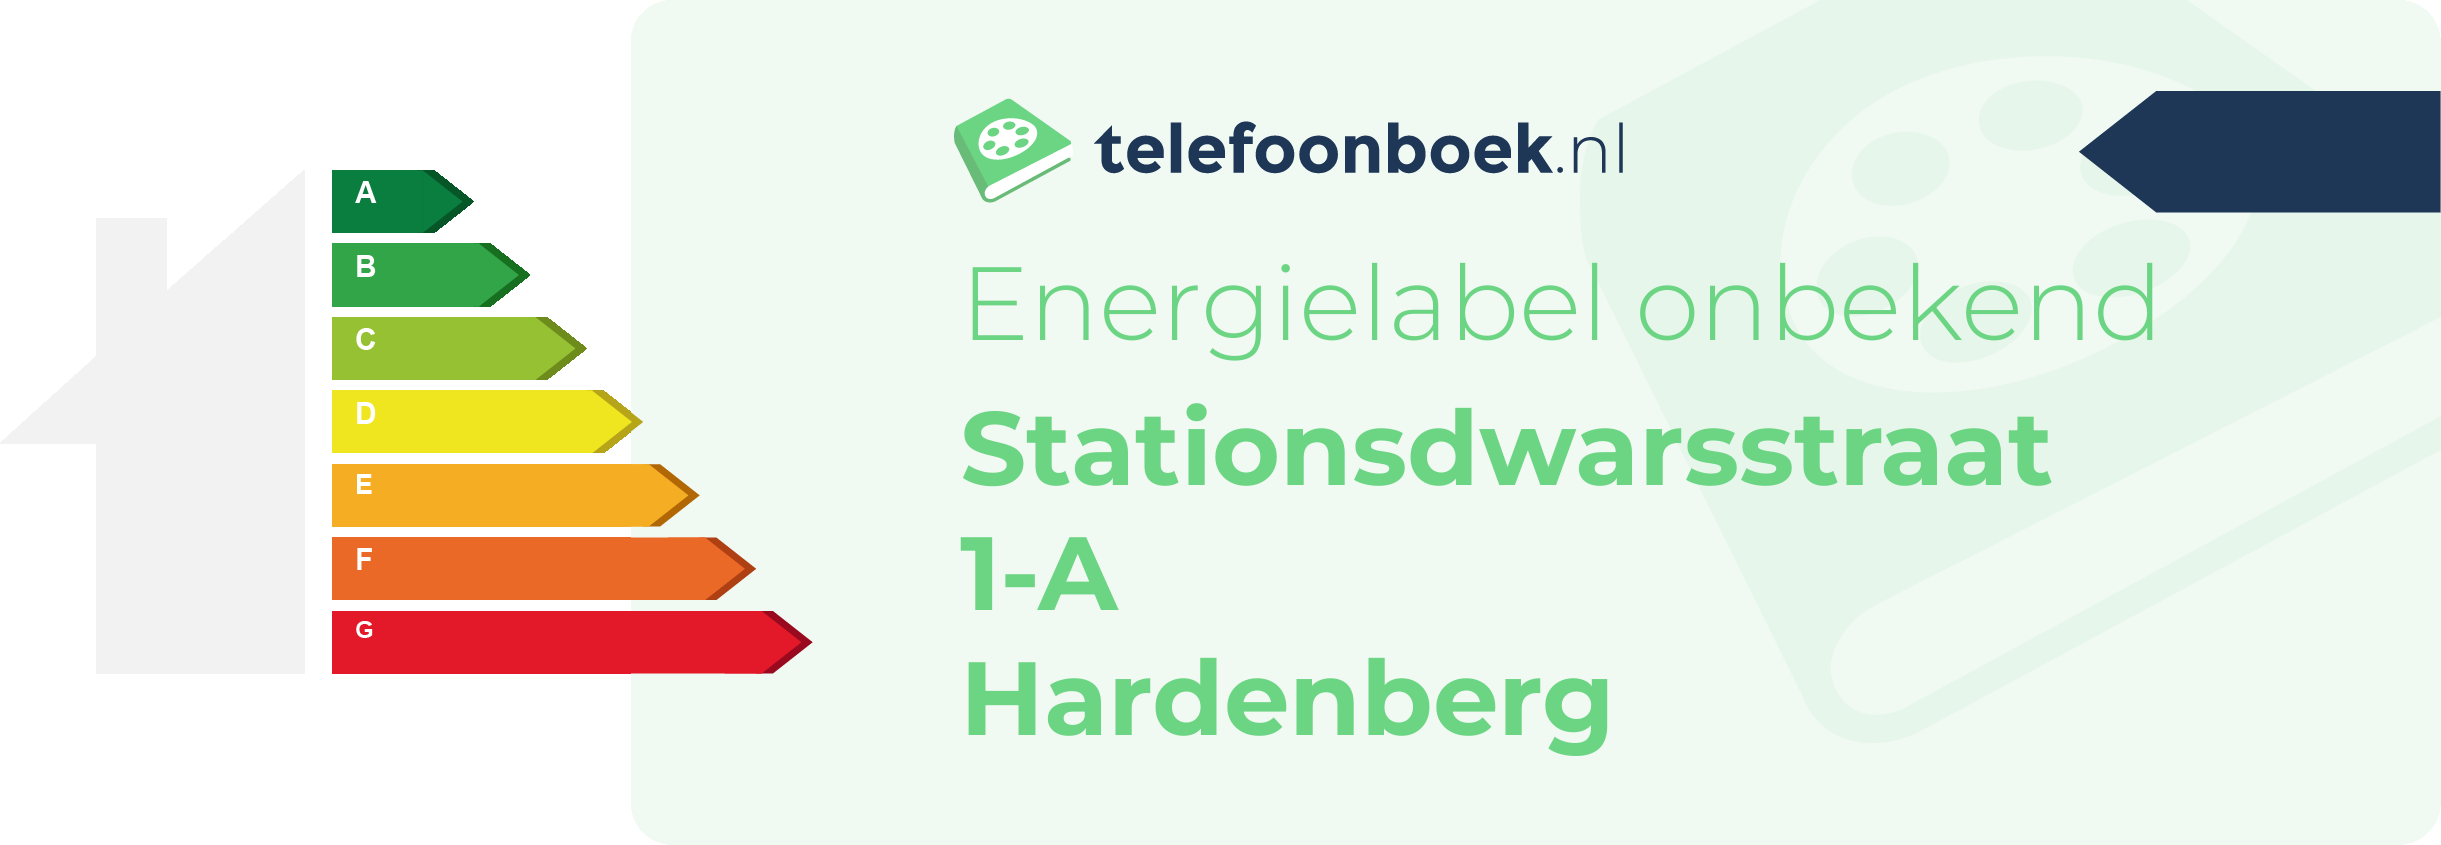 Energielabel Stationsdwarsstraat 1-A Hardenberg